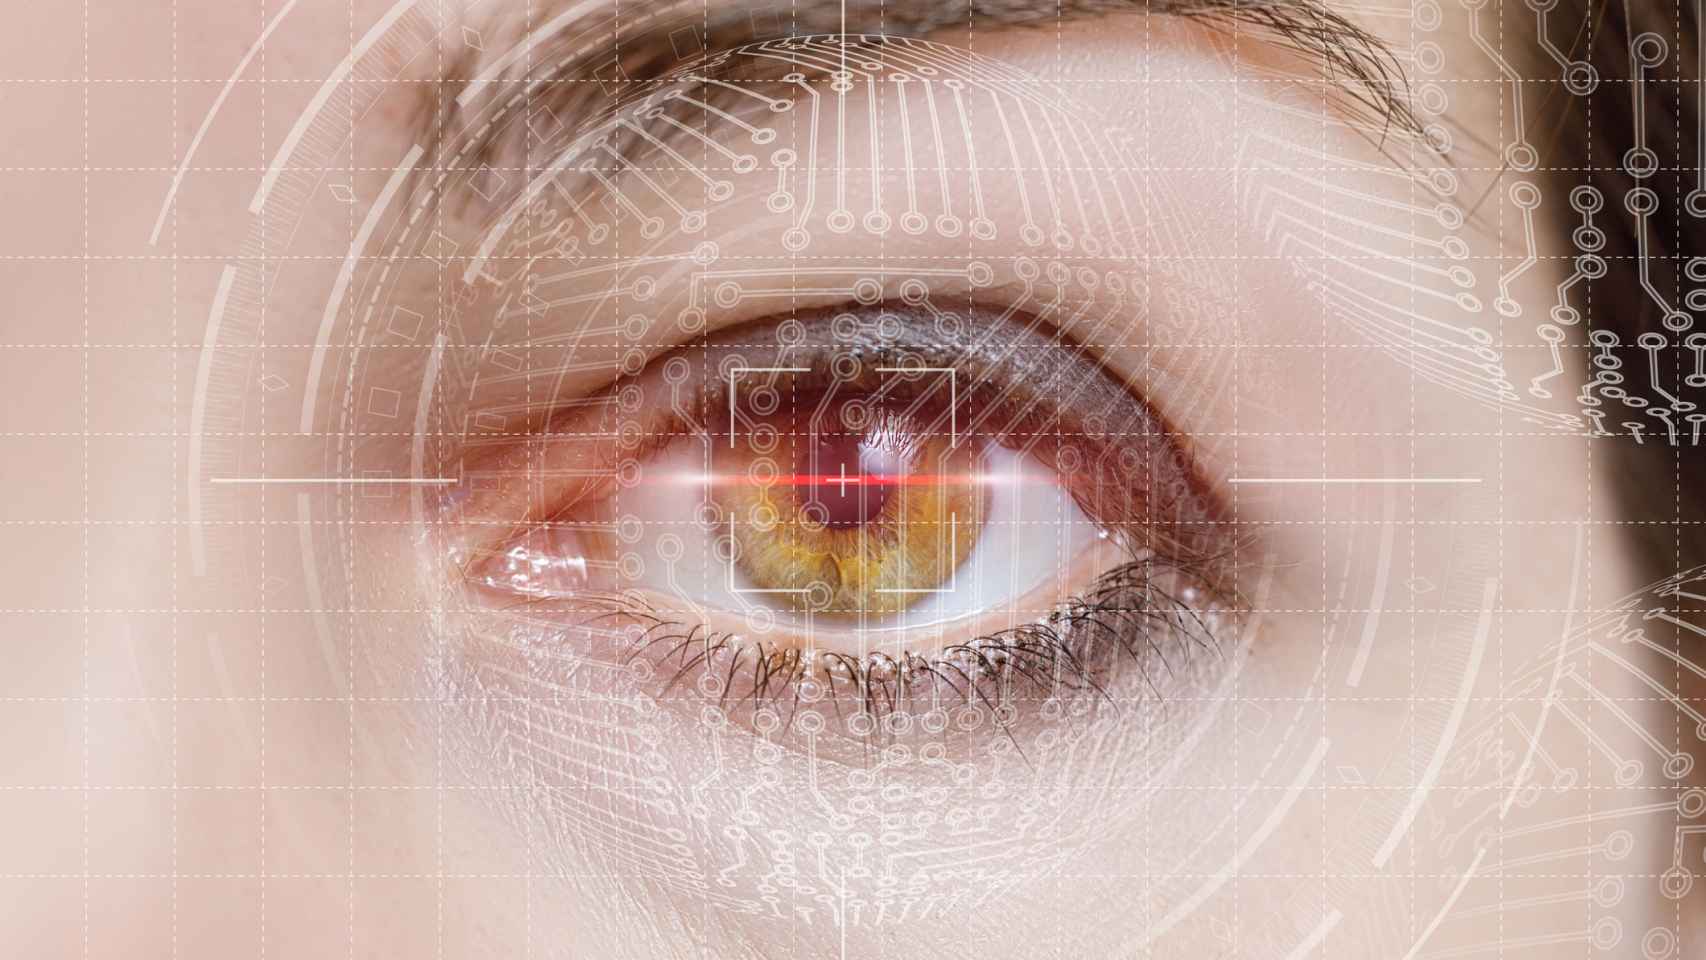 DIVE Medical ha creado un dispositivo médico para explorar la visión en cualquier paciente.